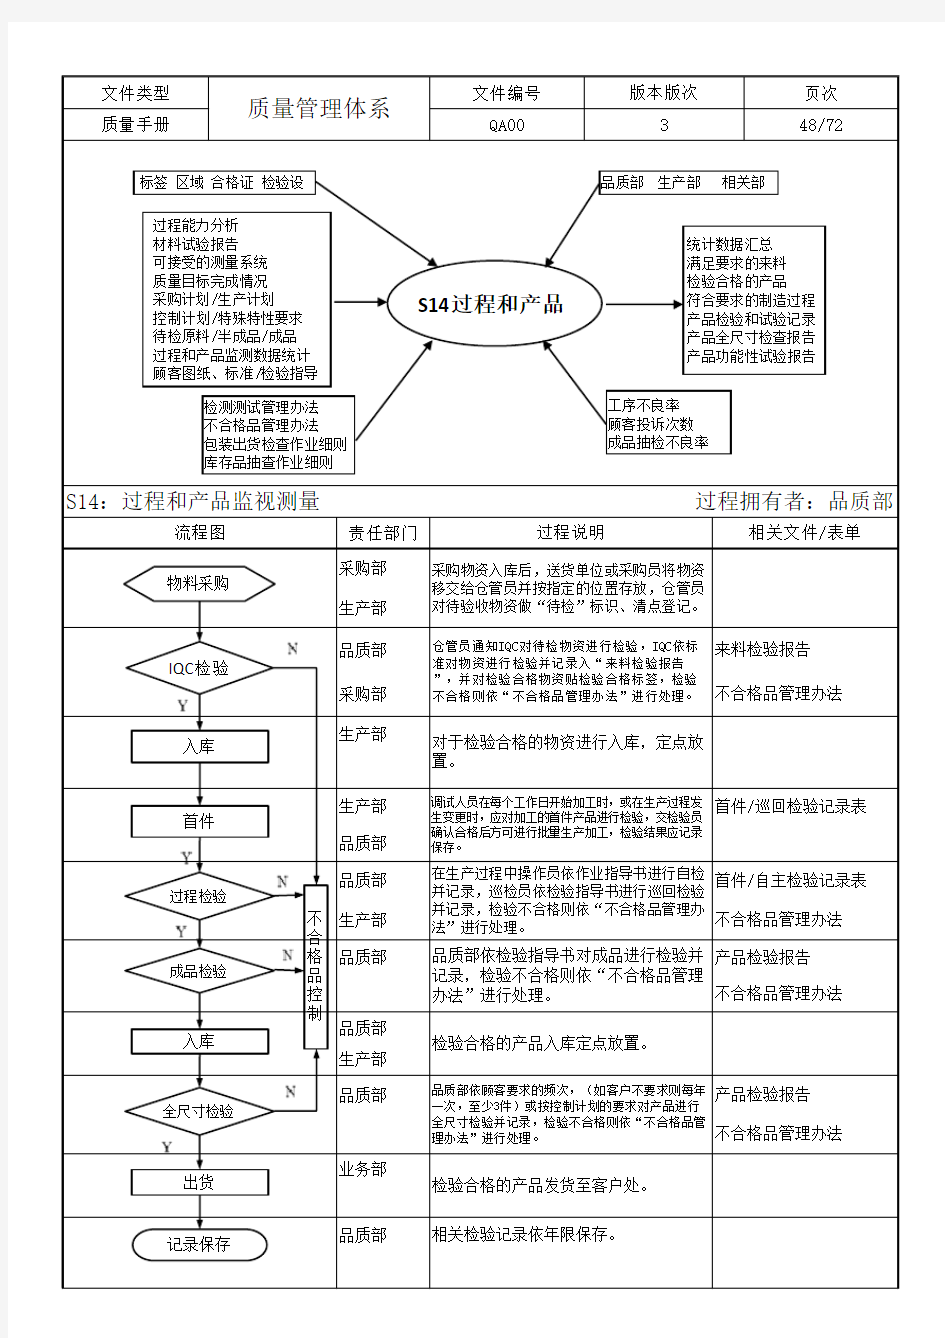 TS质量管理体系37个过程乌龟图、过程流程图